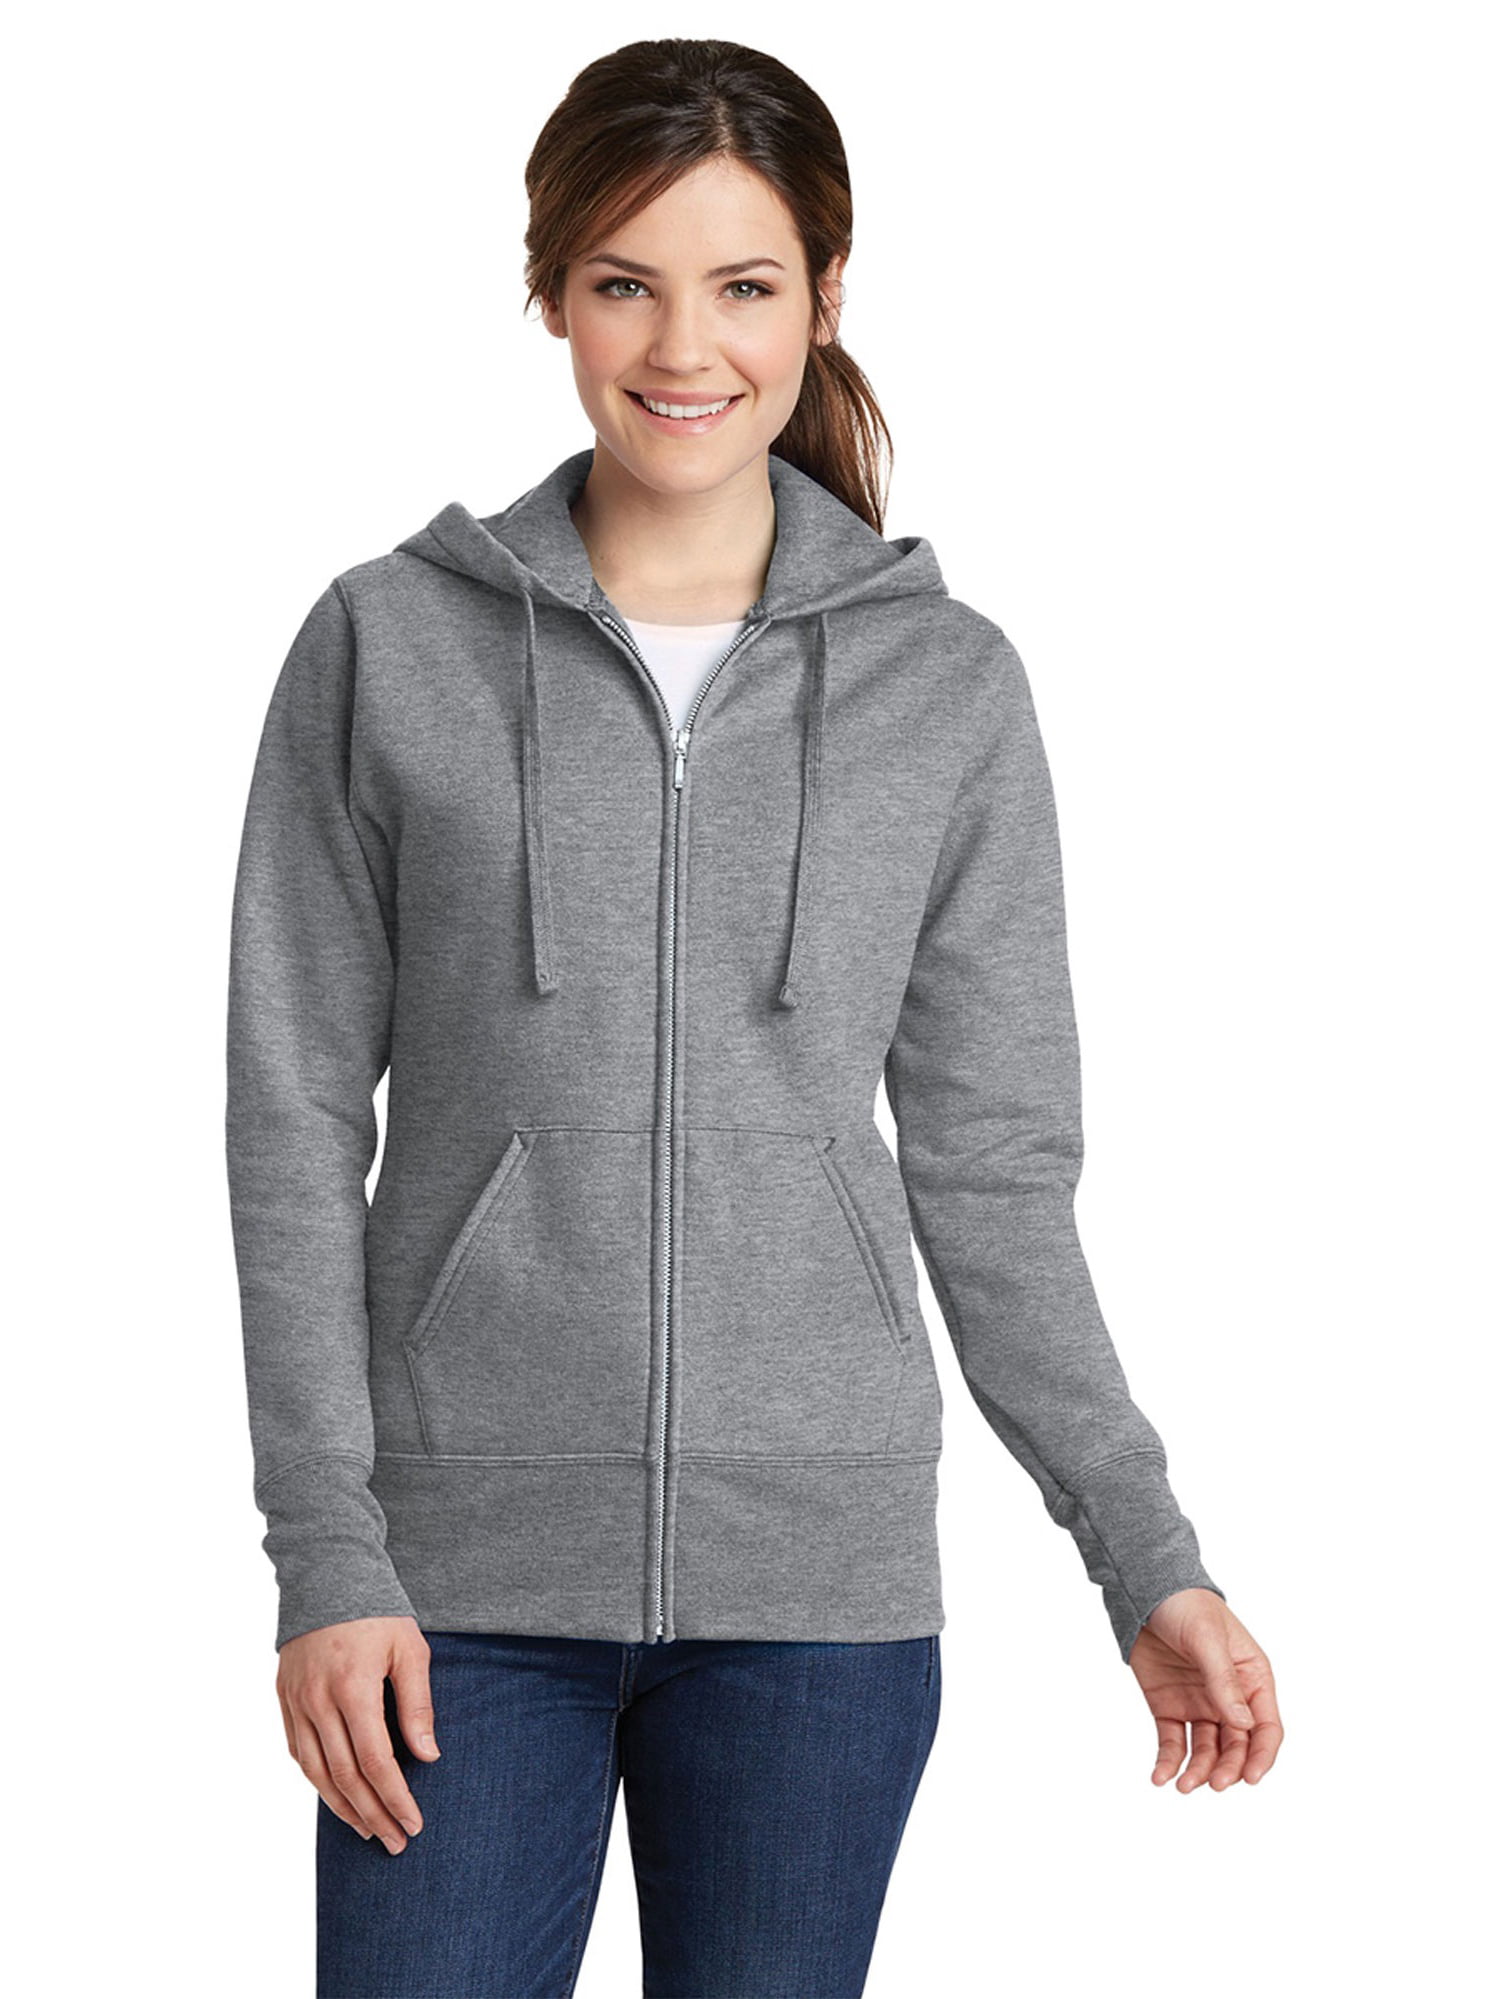 616+ Womens Full-Zip Hoodie Front View Of Hooded Sweatshirt Best Free ...